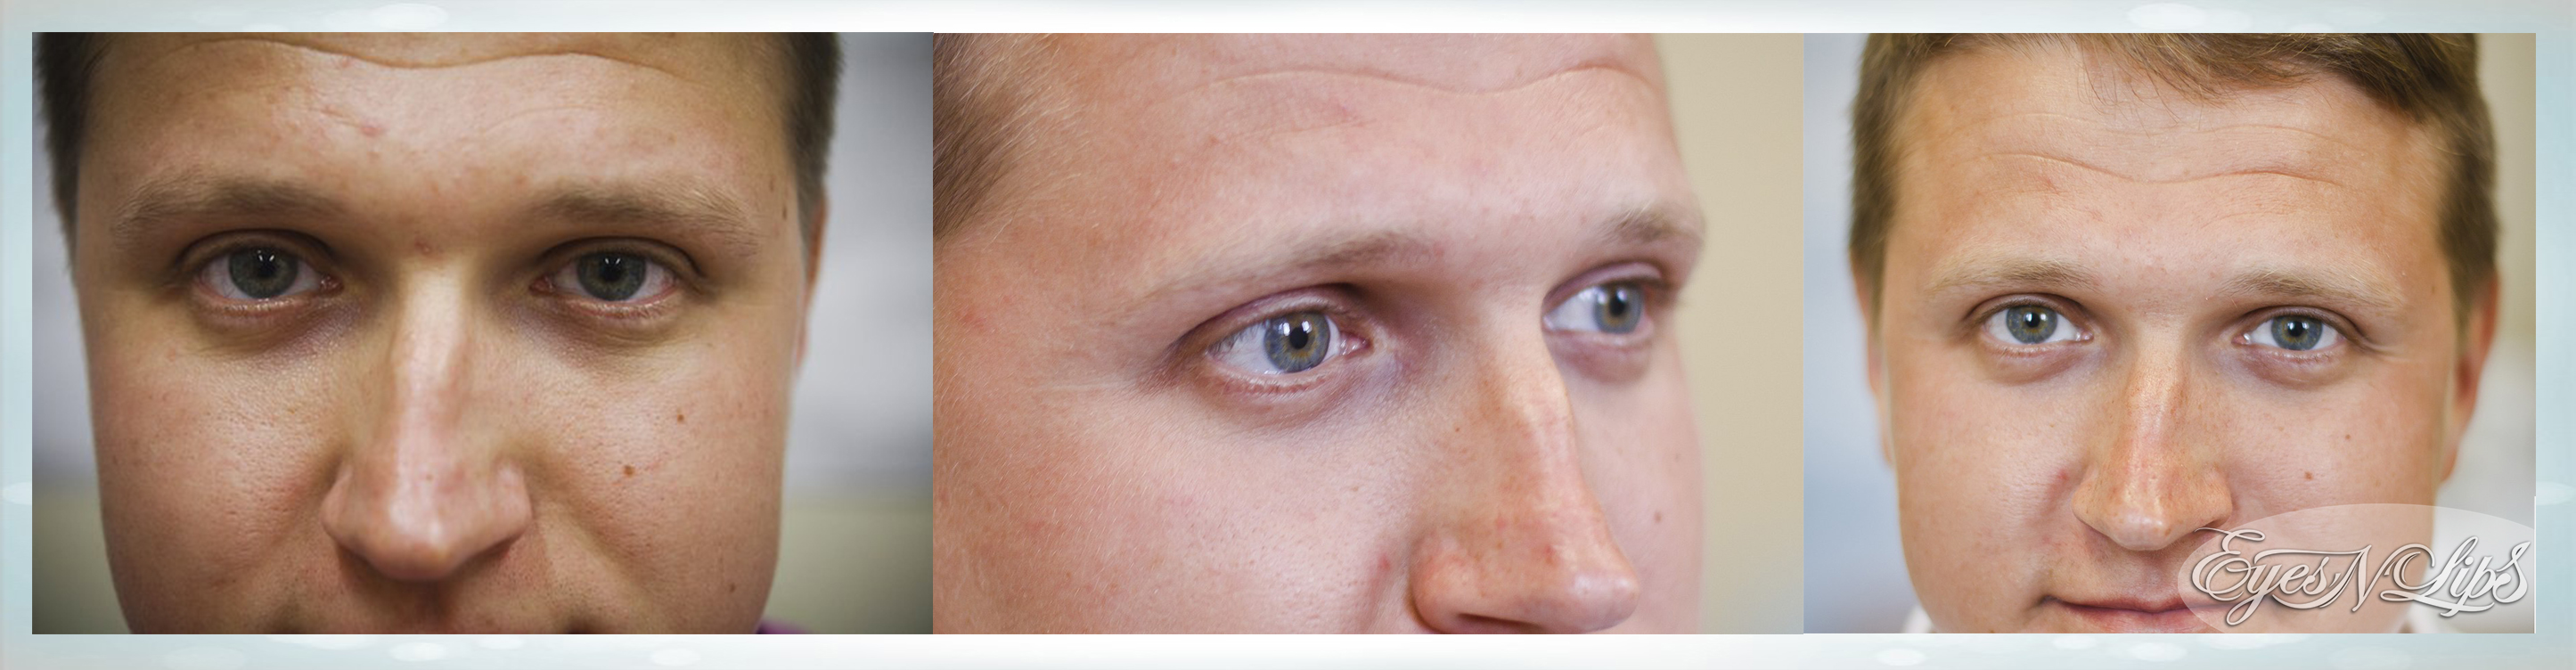 Мешки под глазами причина у мужчин лечение. Уколы под глаза от темных кругов. Операция от темных кругов. Синяки под глазами до и после.